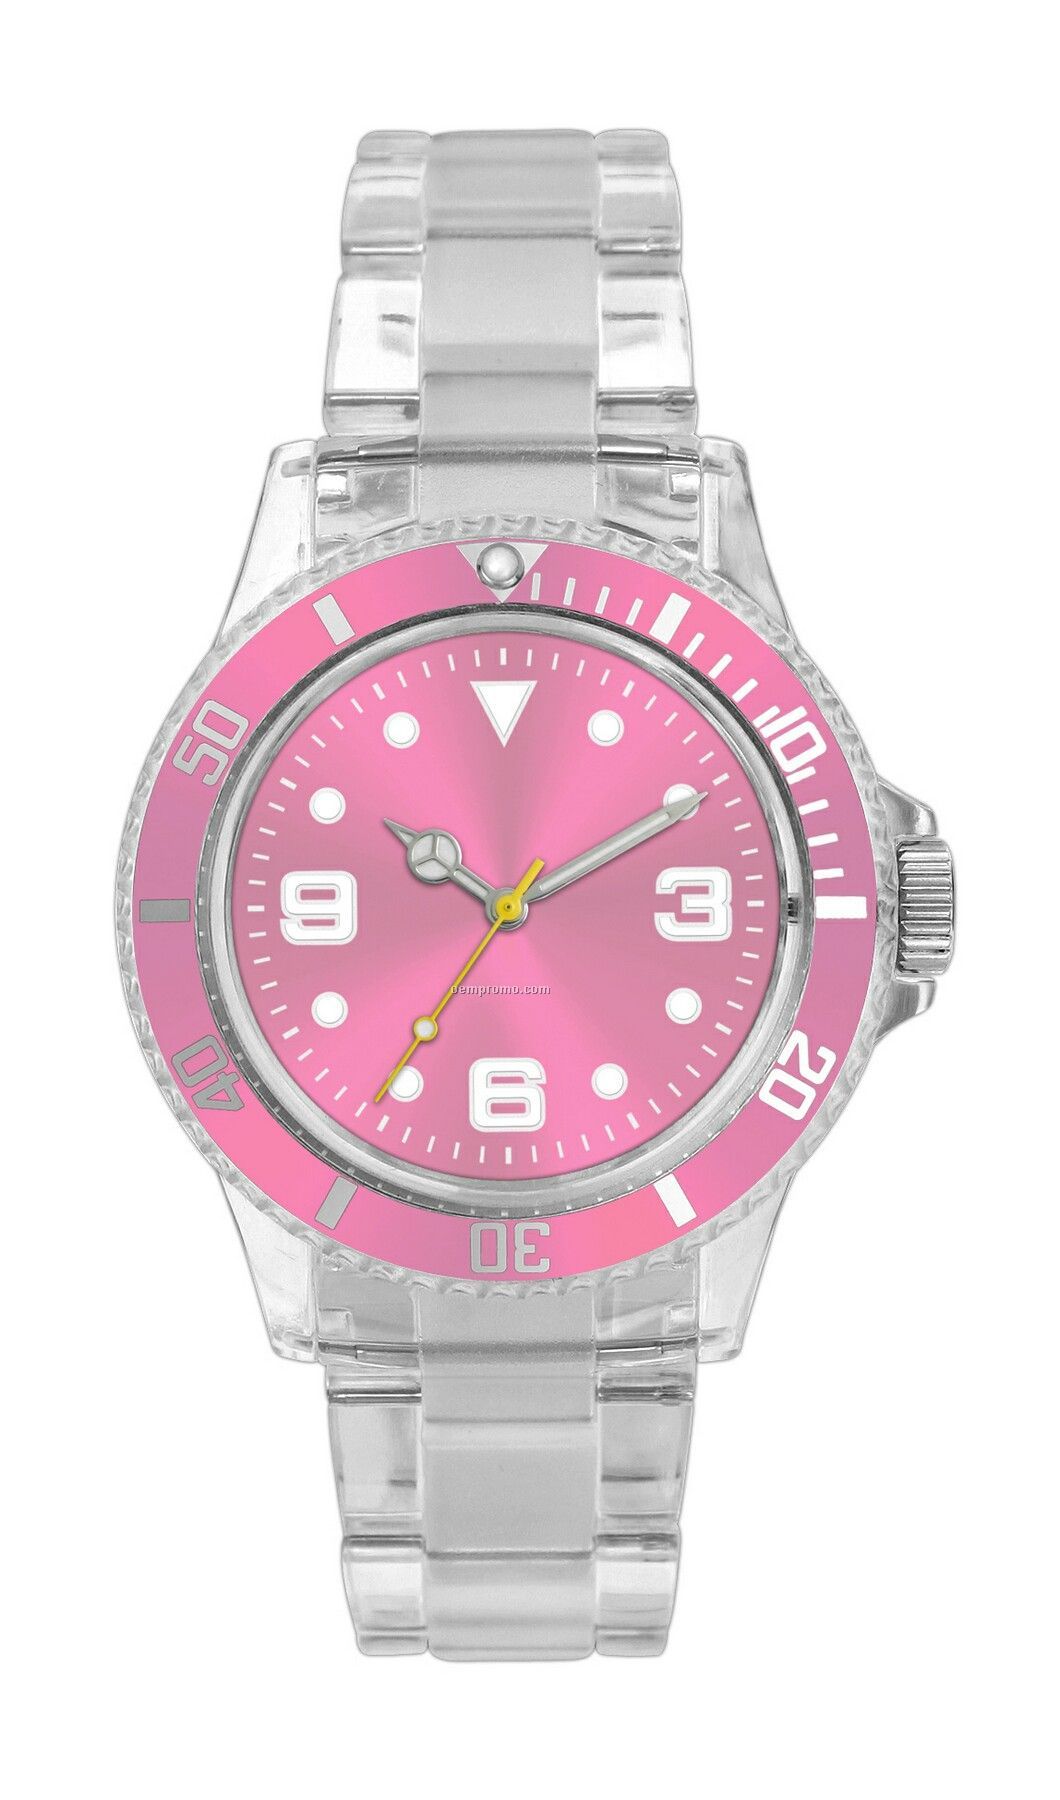 Pedre Polar Watch W/ Pink Bezel